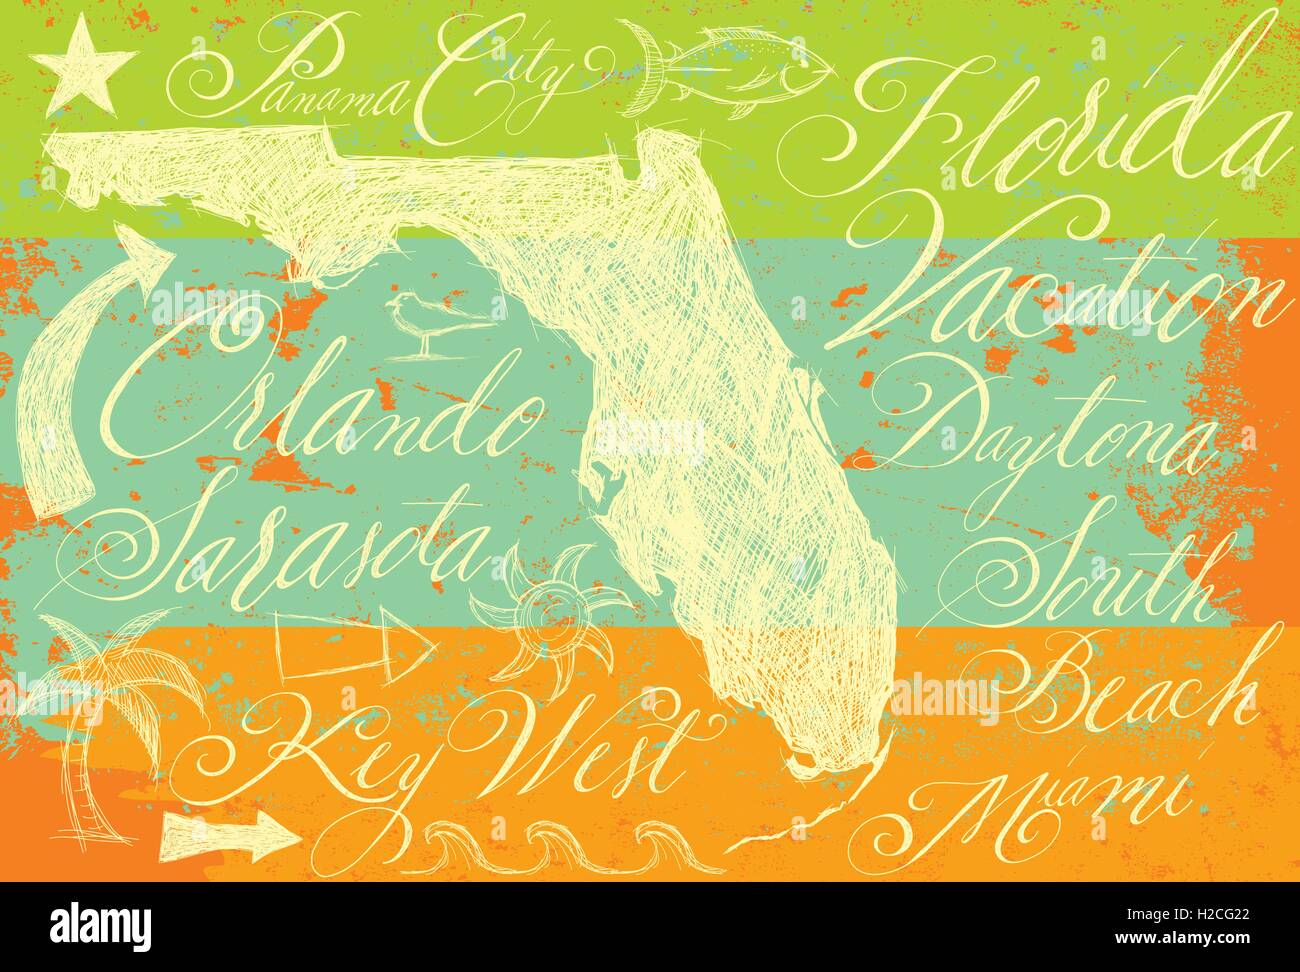 Florida Kritzeleien mit Kalligraphie Hand gezeichneten US-Bundesstaat Florida mit anderen Kritzeleien und handgeschriebene Kalligraphie des beliebtes Urlaubsziel Stock Vektor